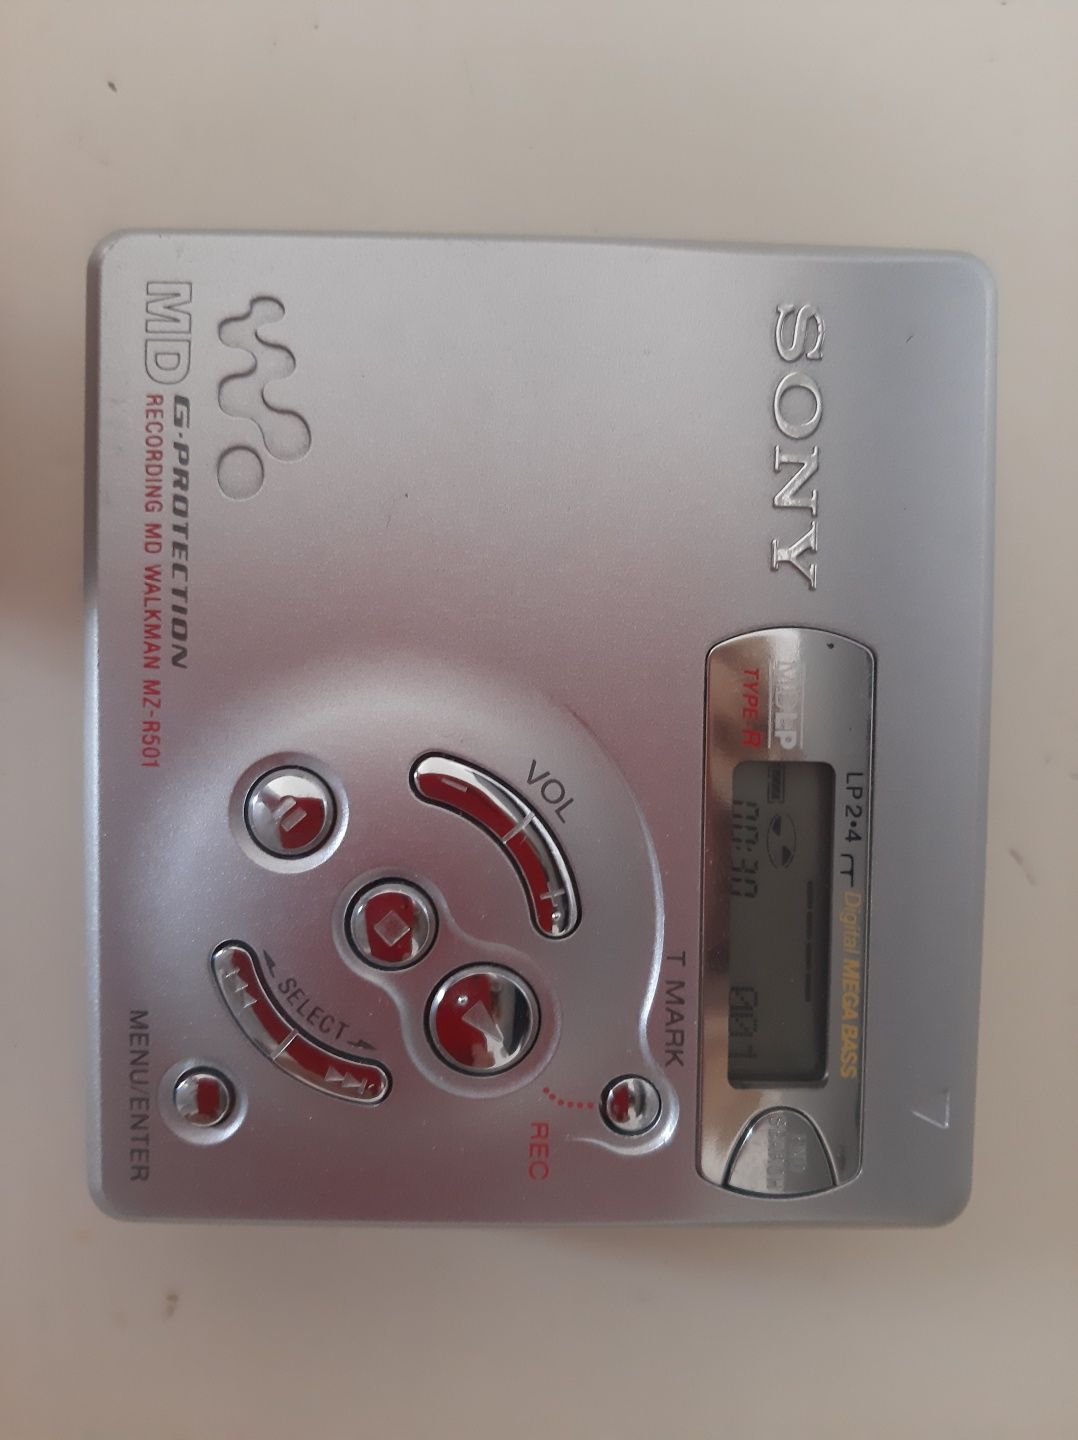 Sony mini disc recorder